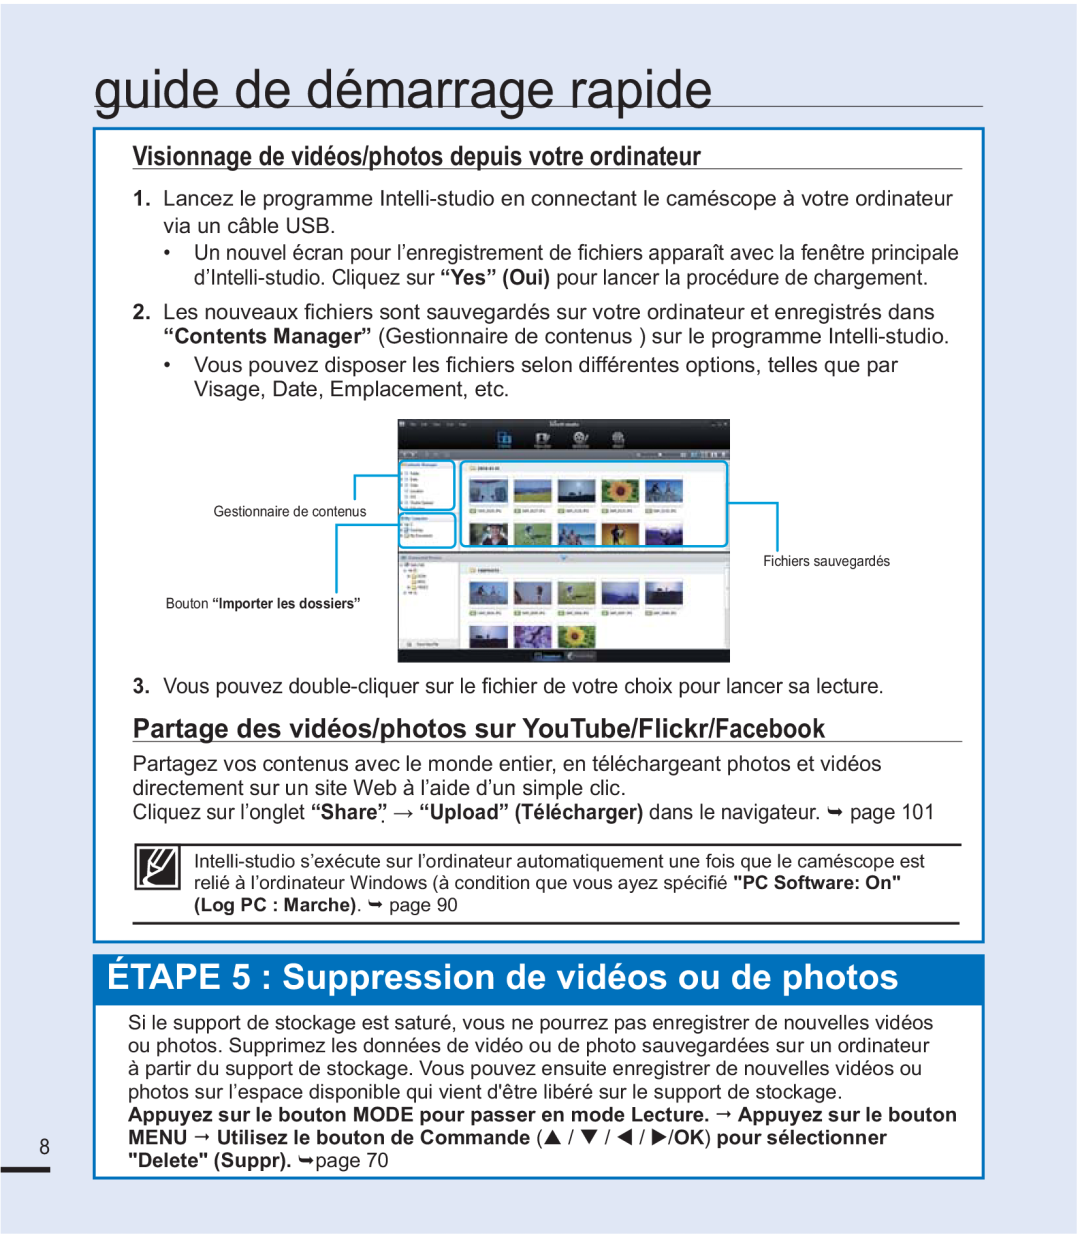 Samsung SMX-F44BP/EDC ÉTAPE 5 Suppression de vidéos ou de photos, Visionnage de vidéos/photos depuis votre ordinateur 